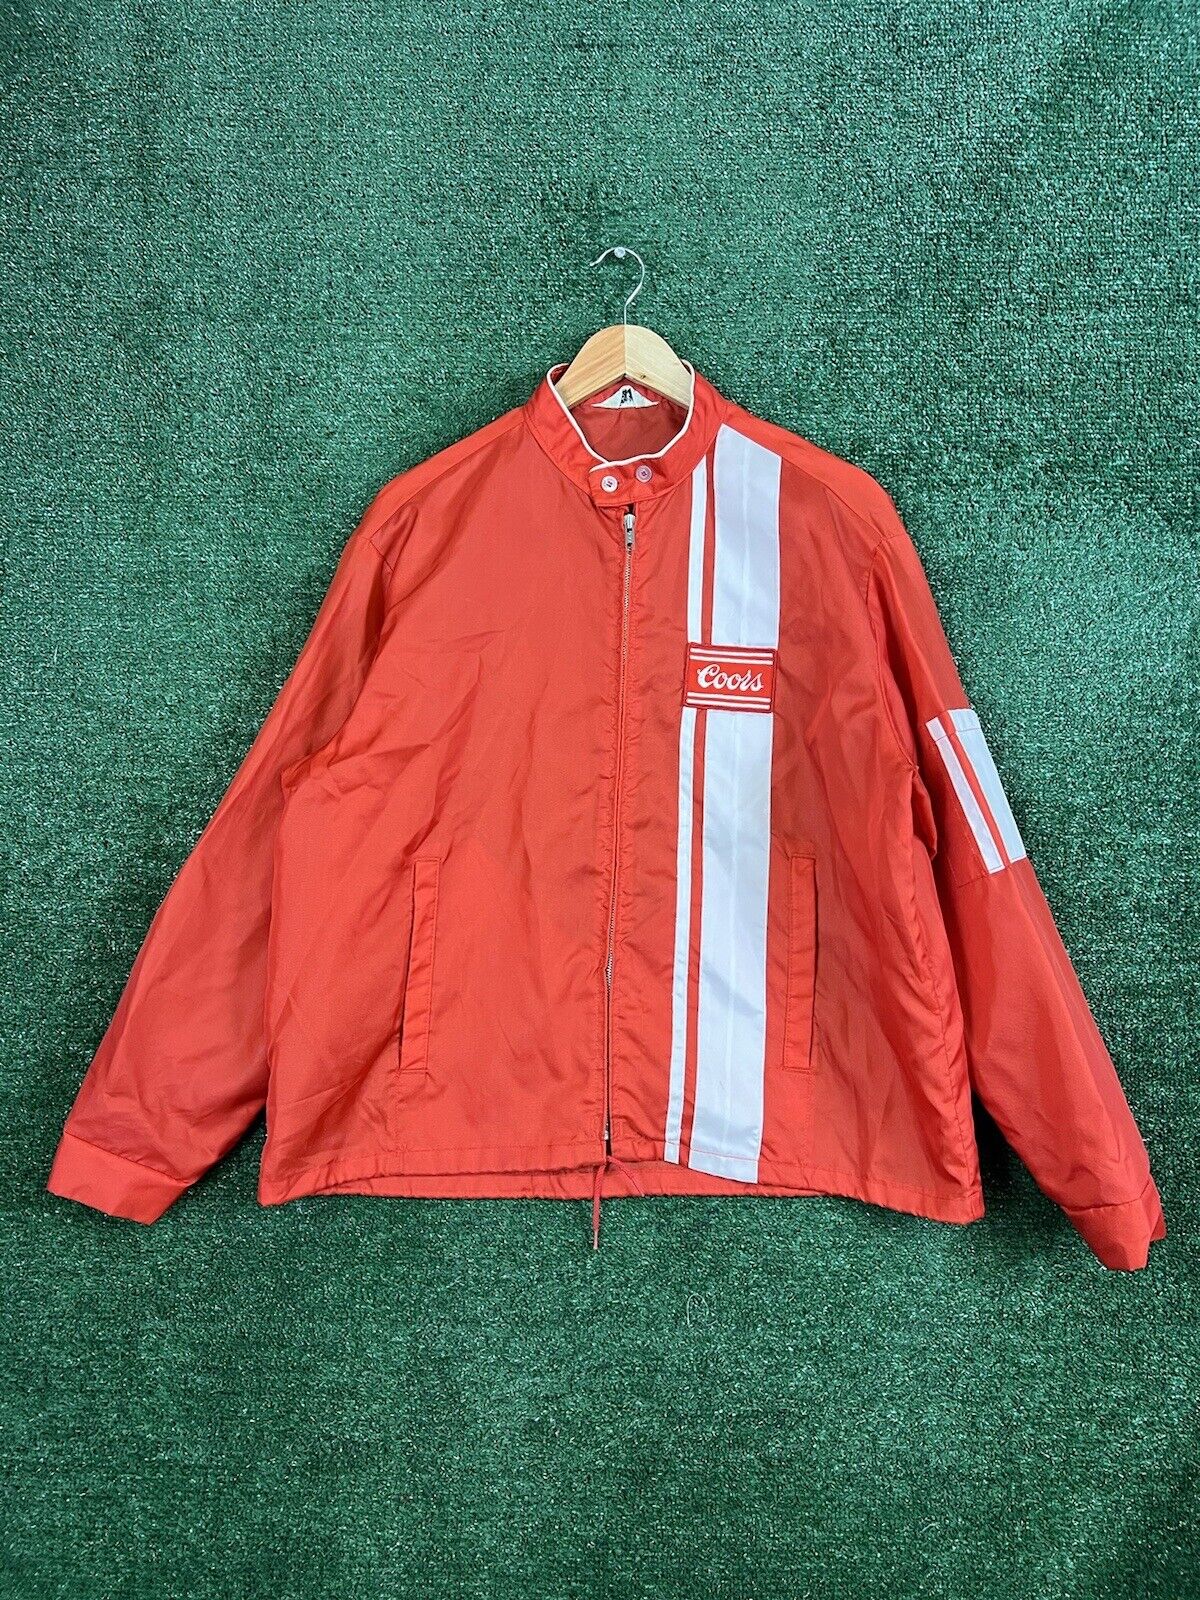 Vintage 70s Swingster Coors Windbreaker Racing Jacket Mens Large Red Full Zip